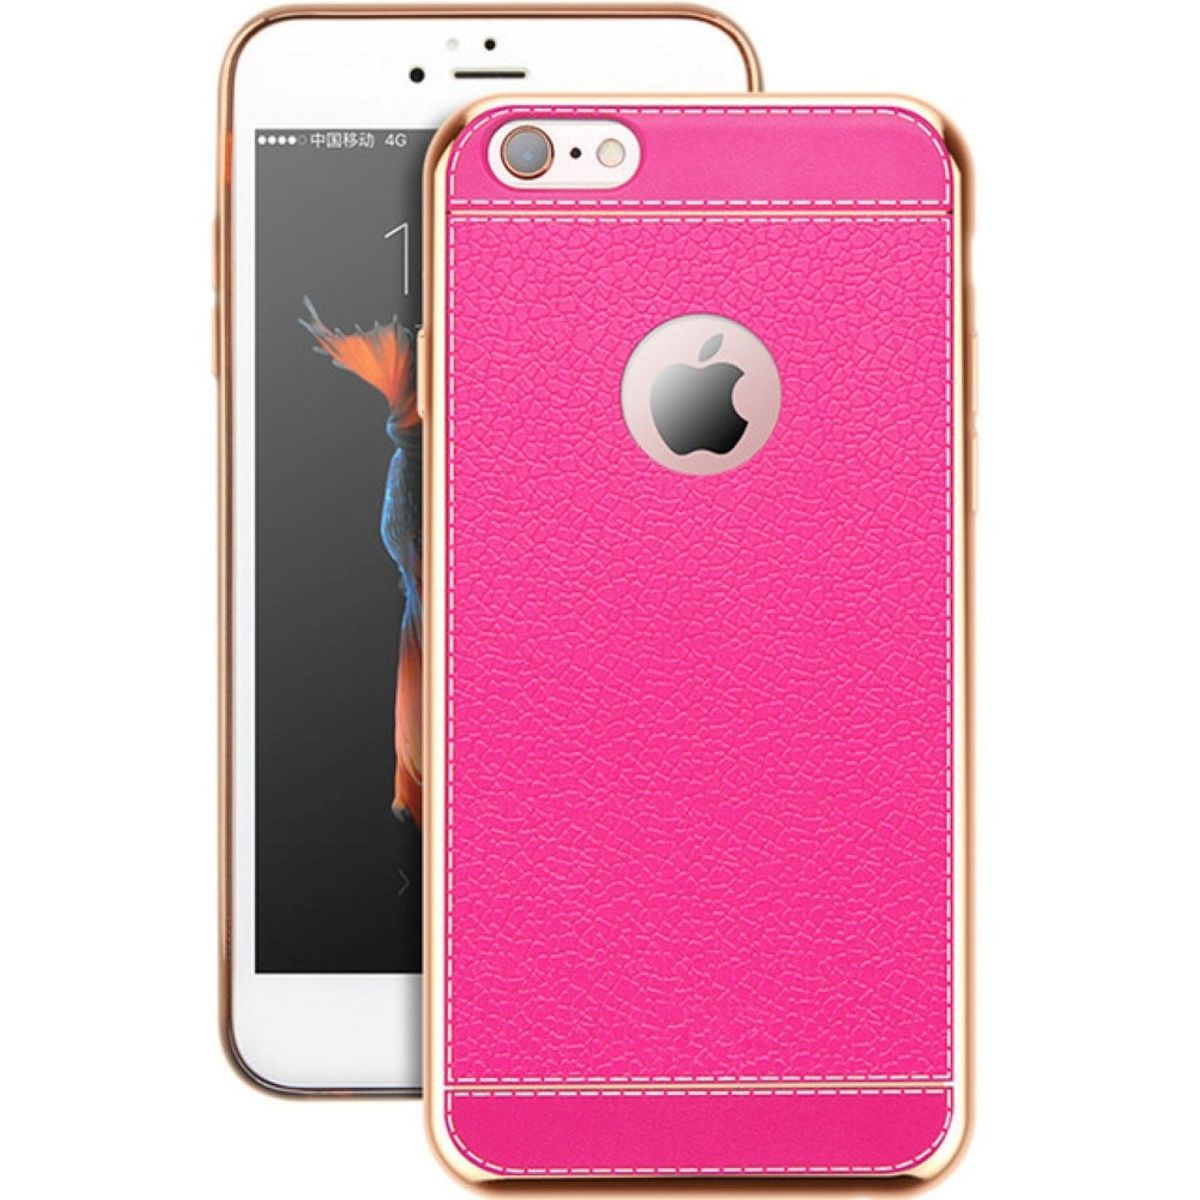 König Design Handy Hülle für Apple iPhone 5 / 5s / SE Schutz Case Tasche Etuis Kunstleder Pink